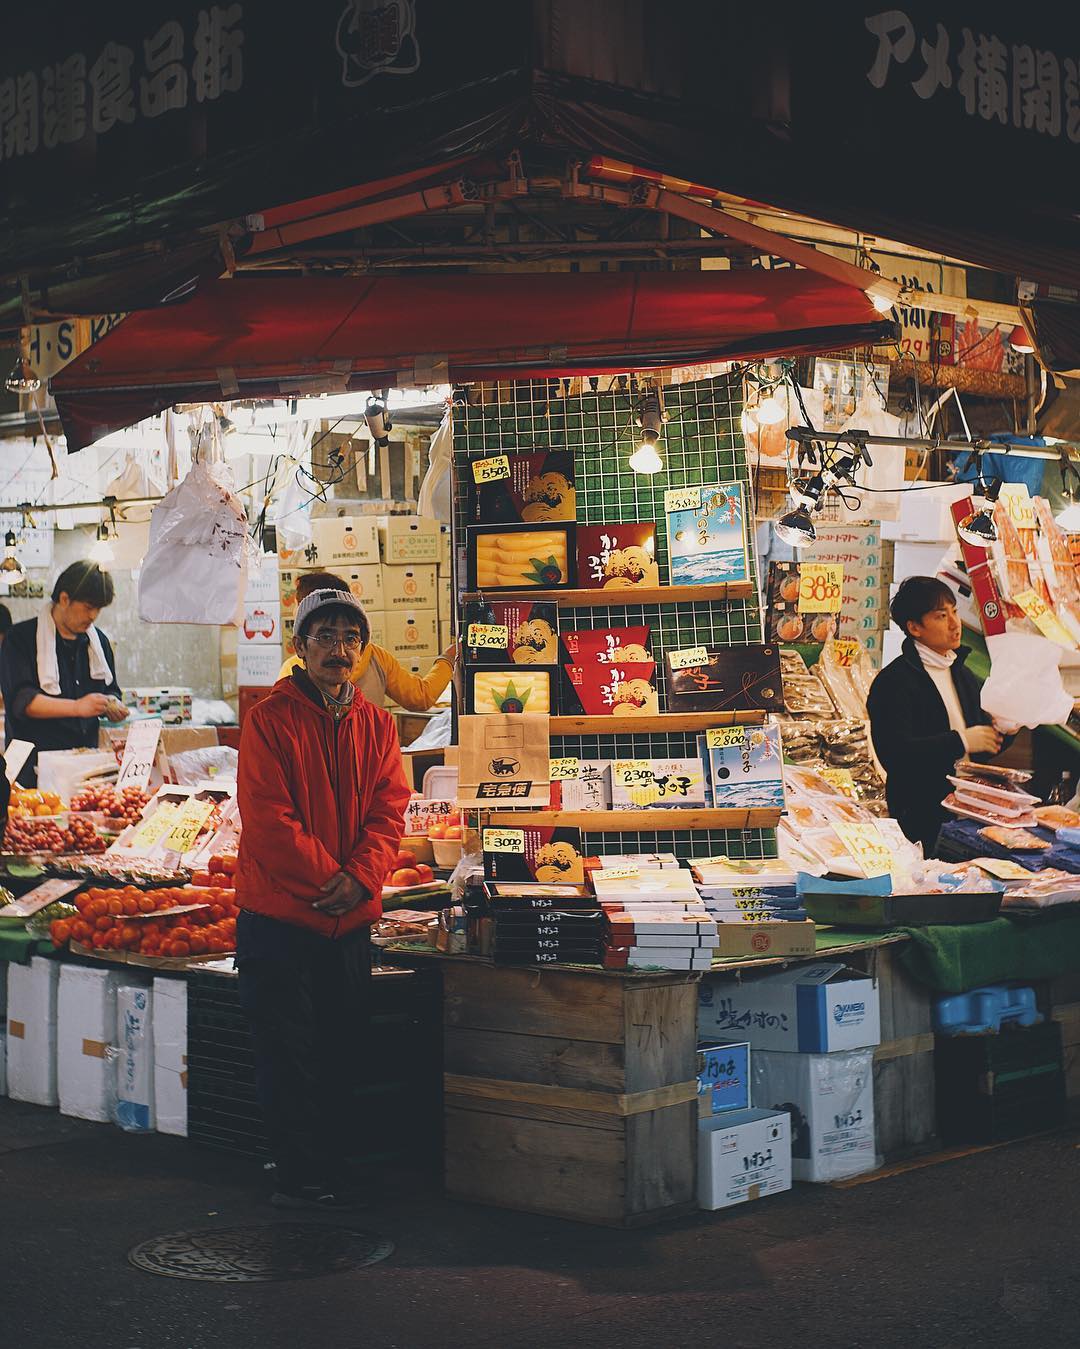 Le marché d'Ameyoko grouille de vie, vestige du Tokyo populaire